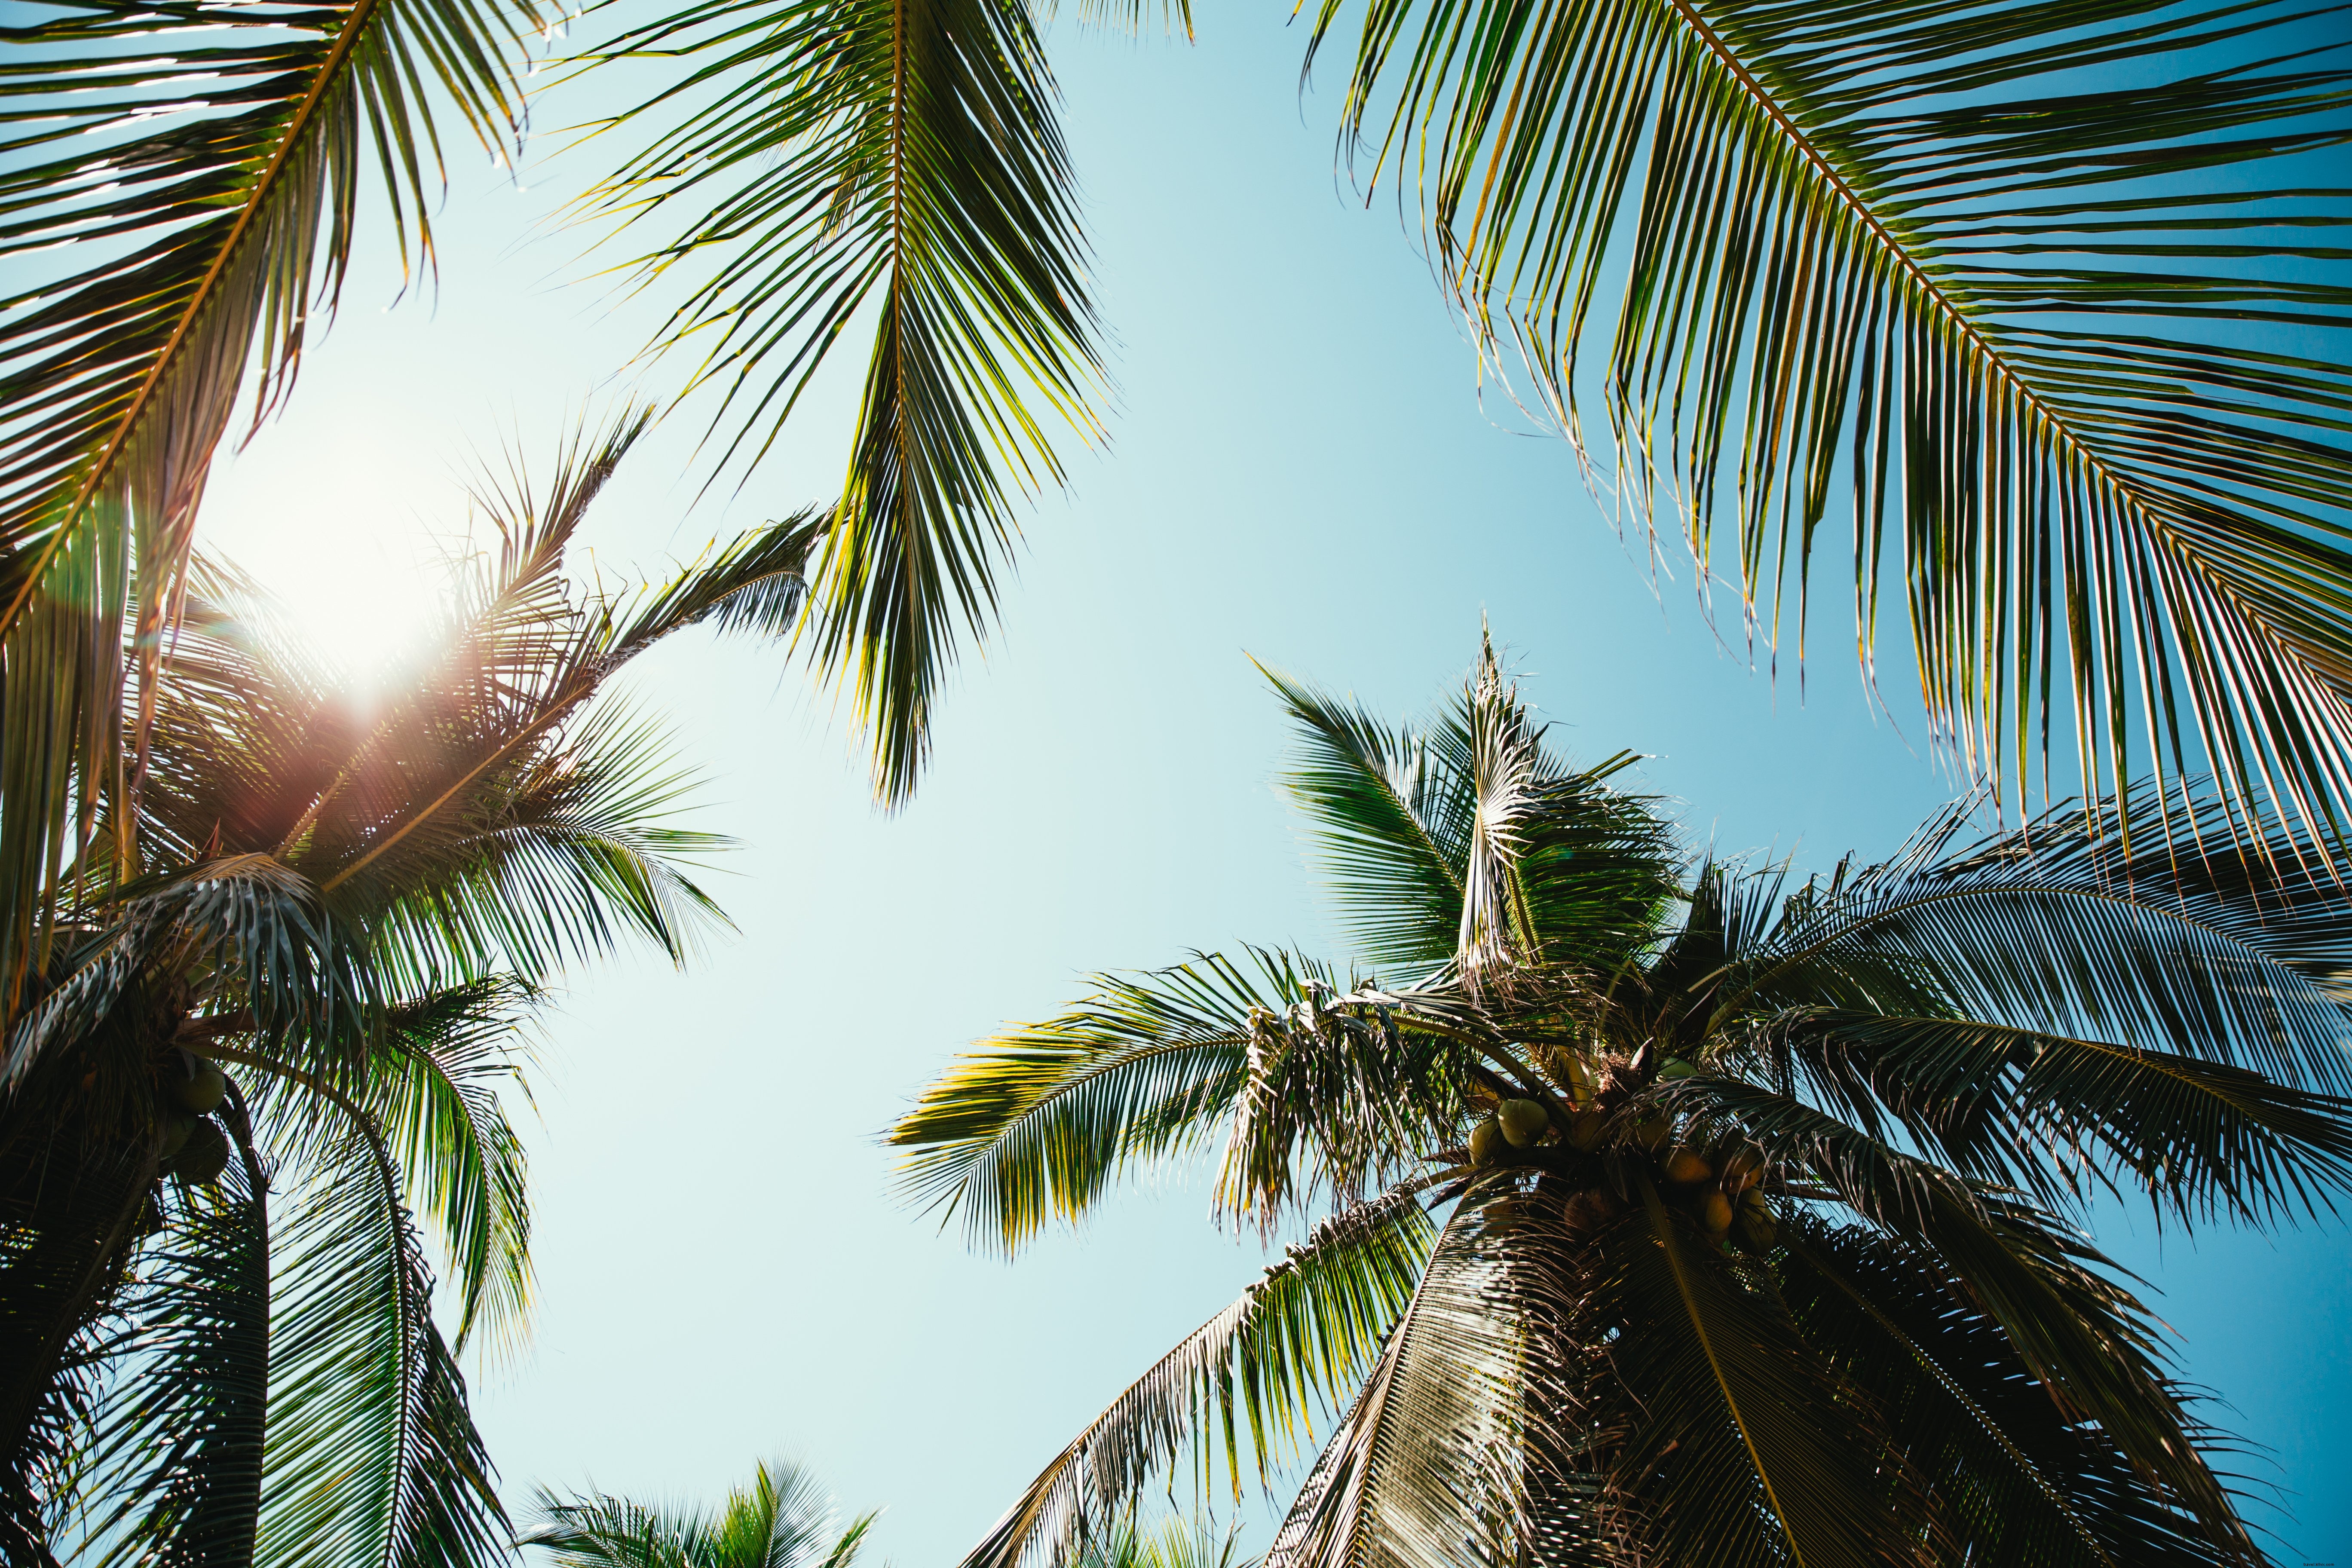 Journée ensoleillée à travers les palmiers Photo